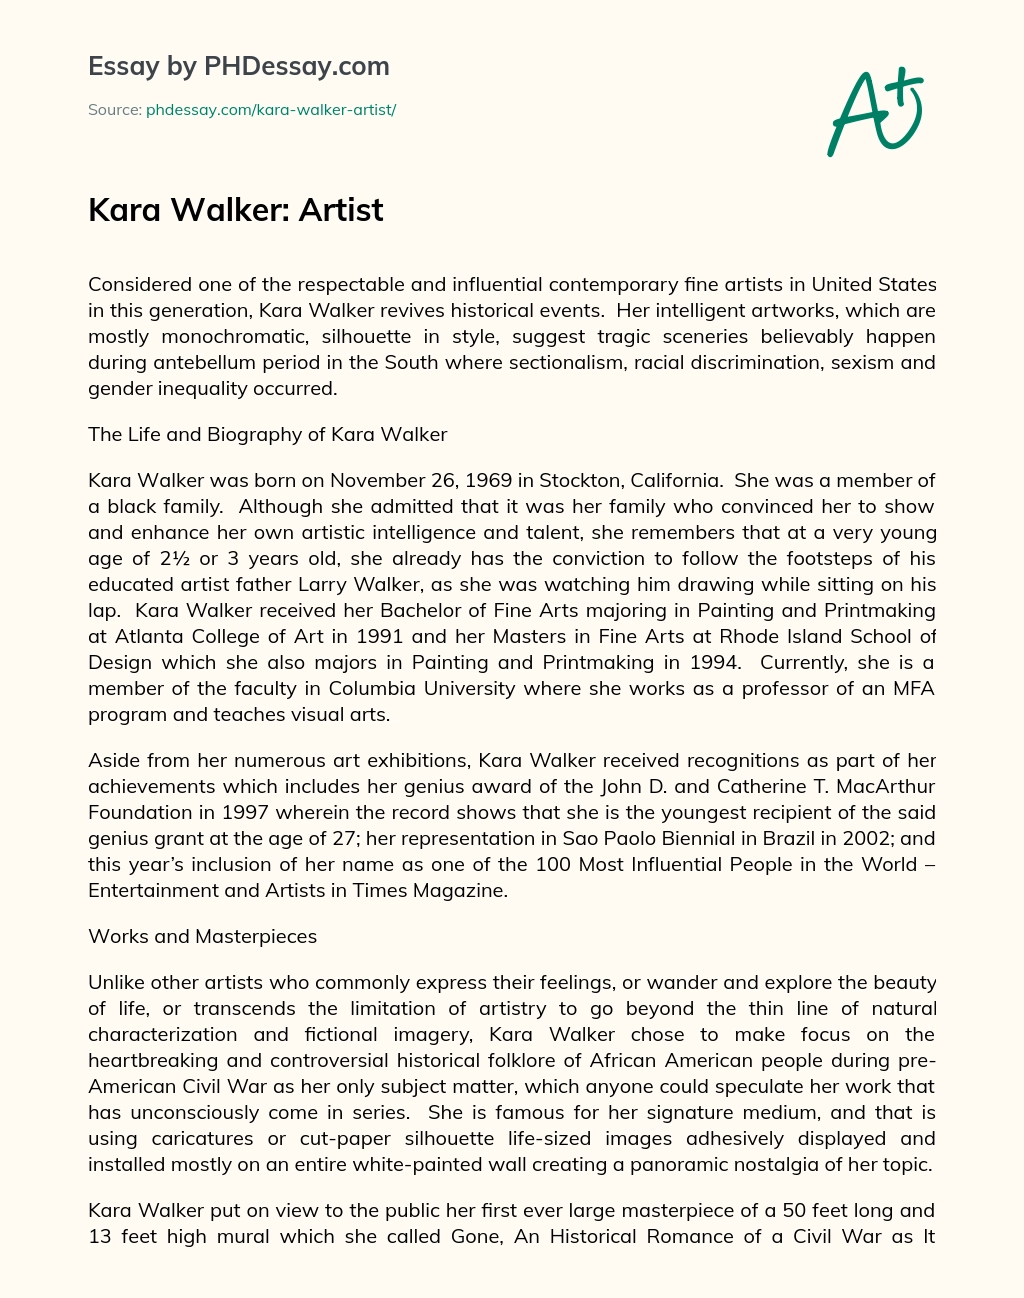 Kara Walker: Artist essay